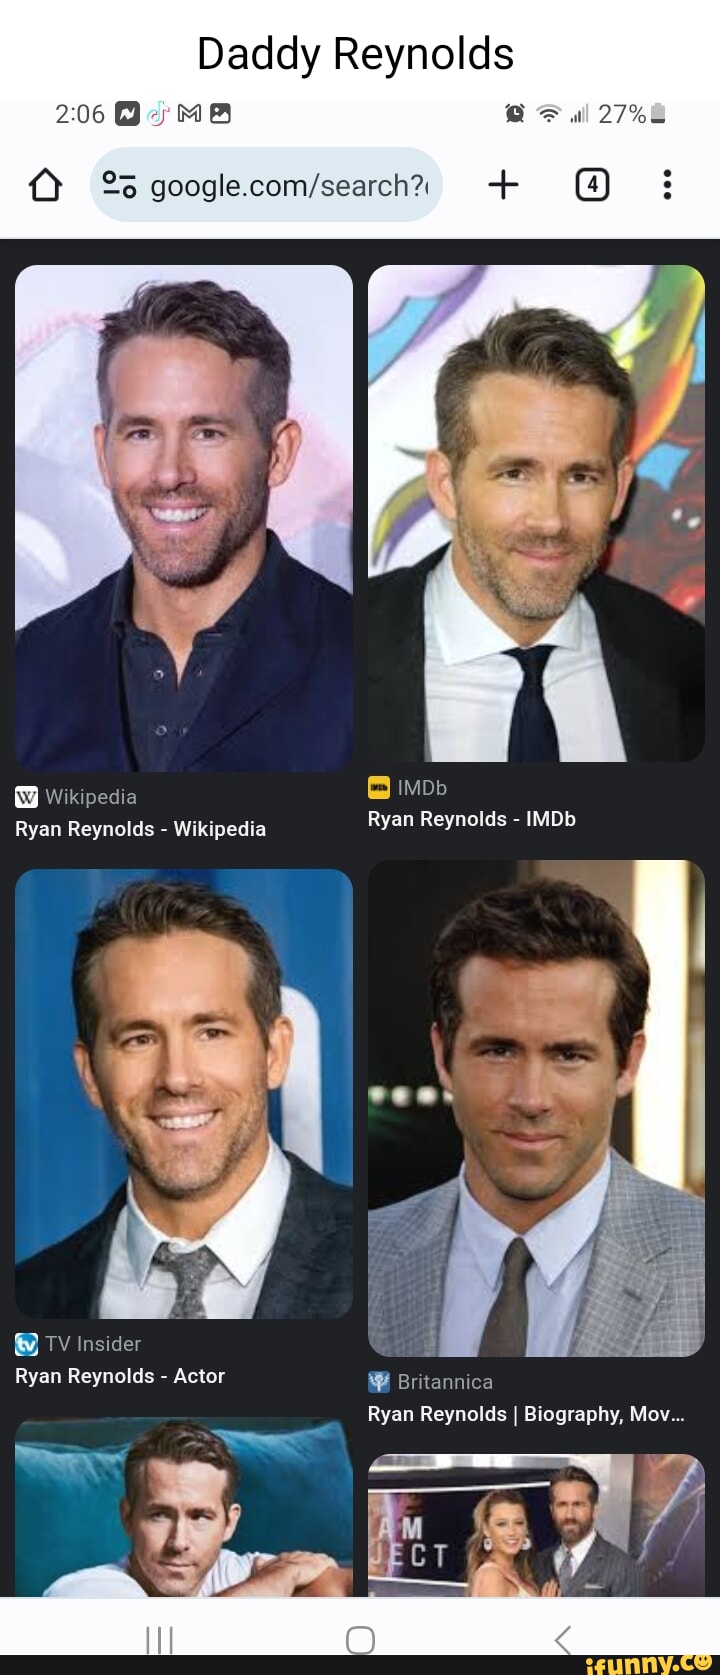 Ryan Reynolds - IMDb